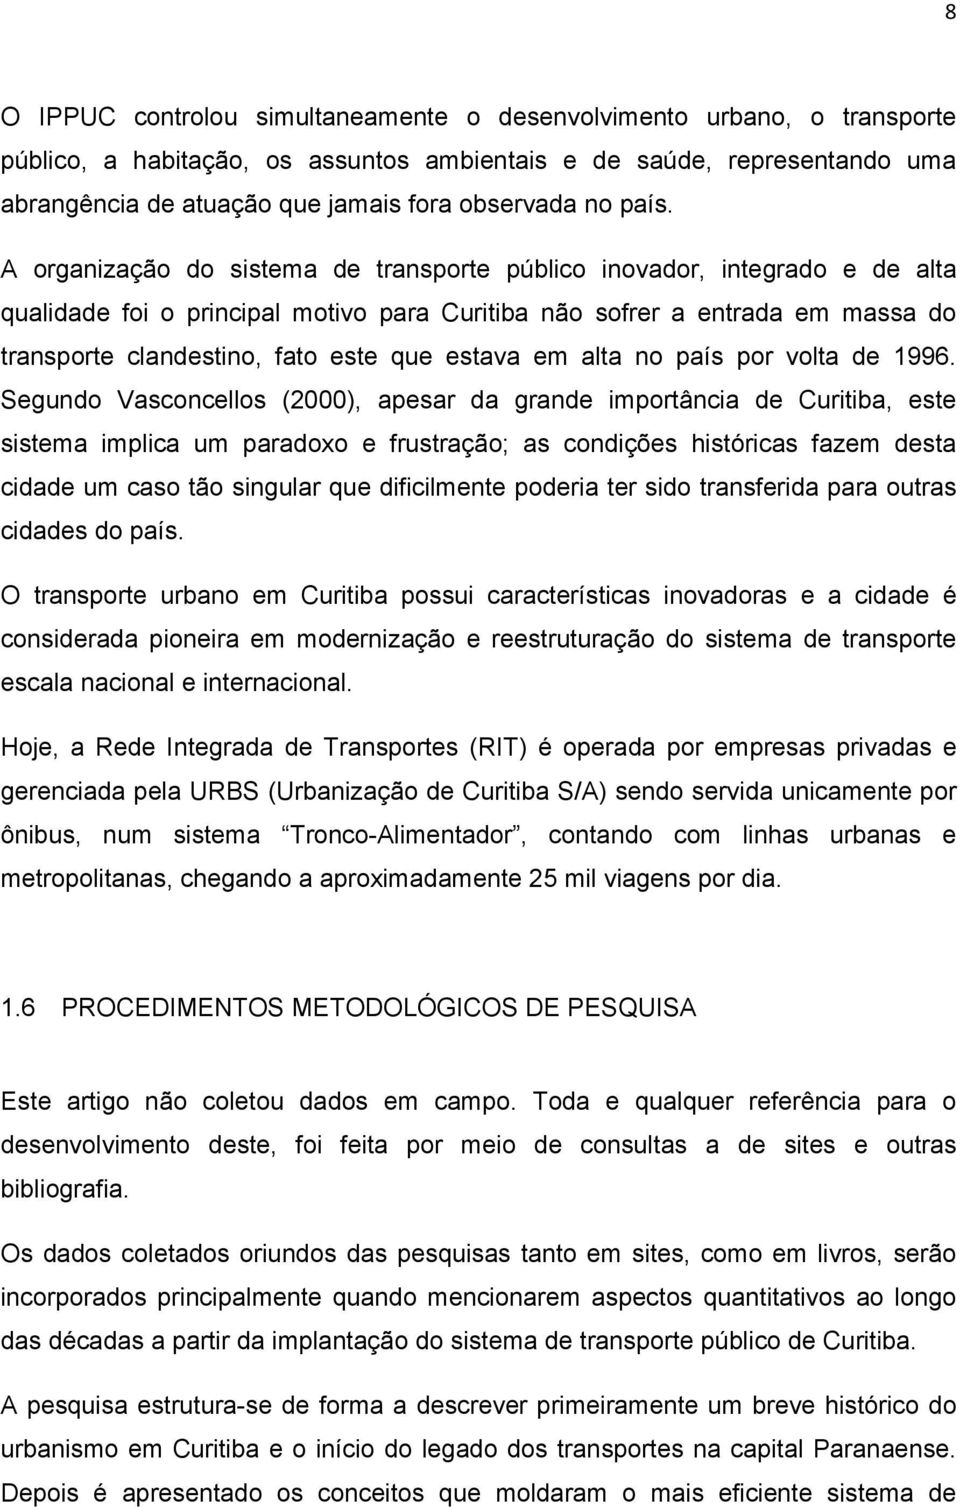 A organização do sistema de transporte público inovador, integrado e de alta qualidade foi o principal motivo para Curitiba não sofrer a entrada em massa do transporte clandestino, fato este que